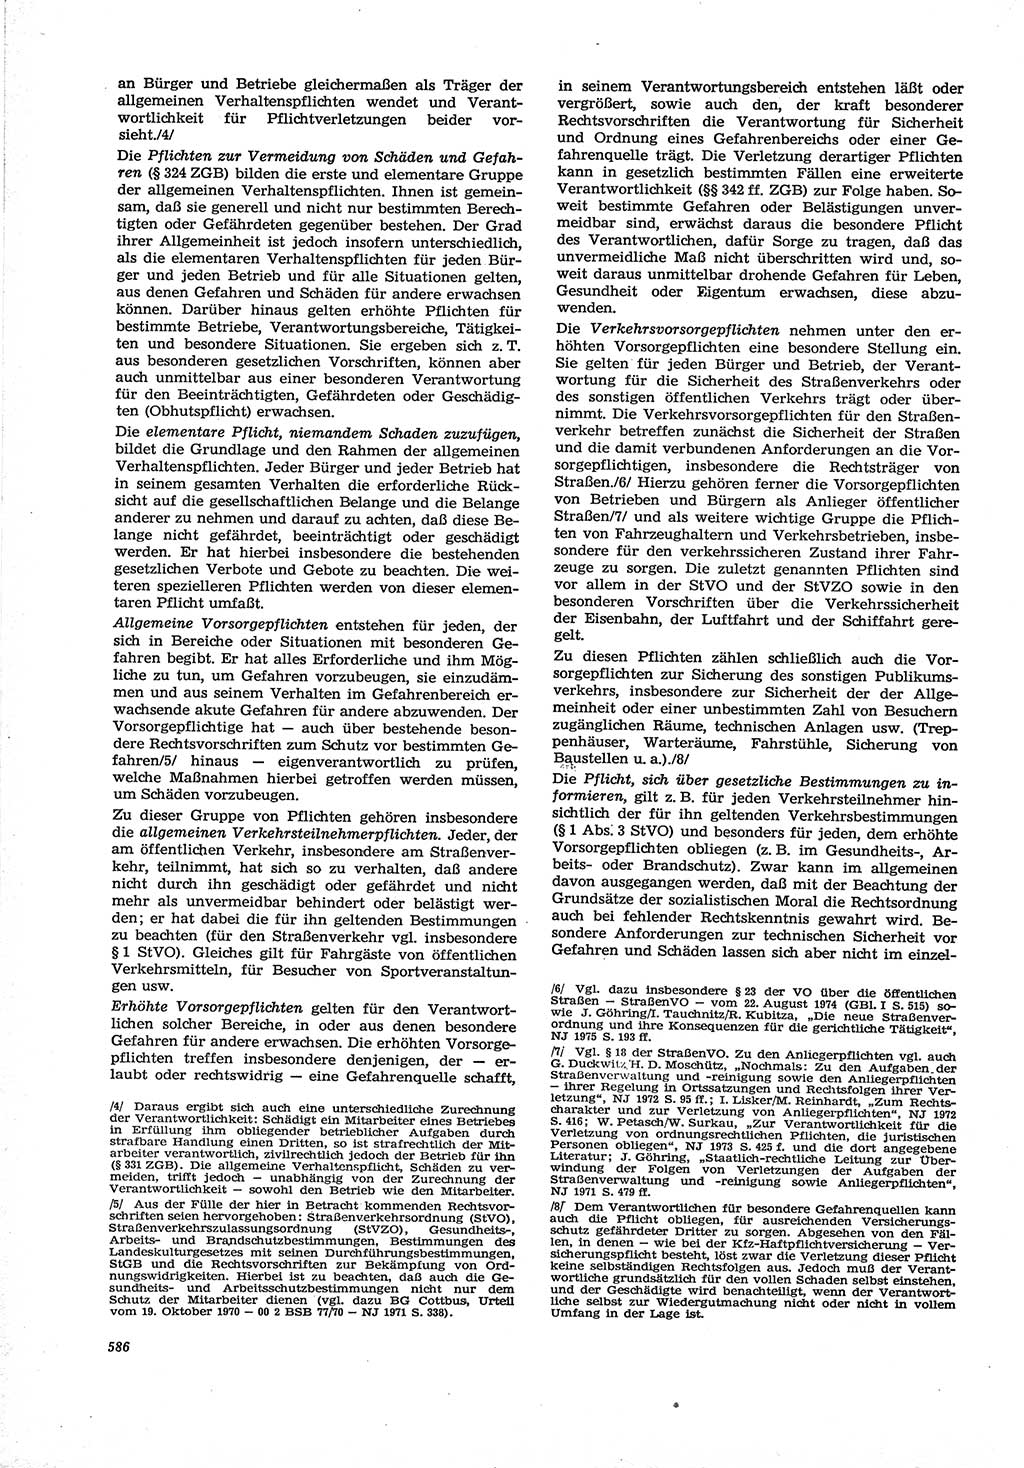 Neue Justiz (NJ), Zeitschrift für Recht und Rechtswissenschaft [Deutsche Demokratische Republik (DDR)], 30. Jahrgang 1976, Seite 586 (NJ DDR 1976, S. 586)